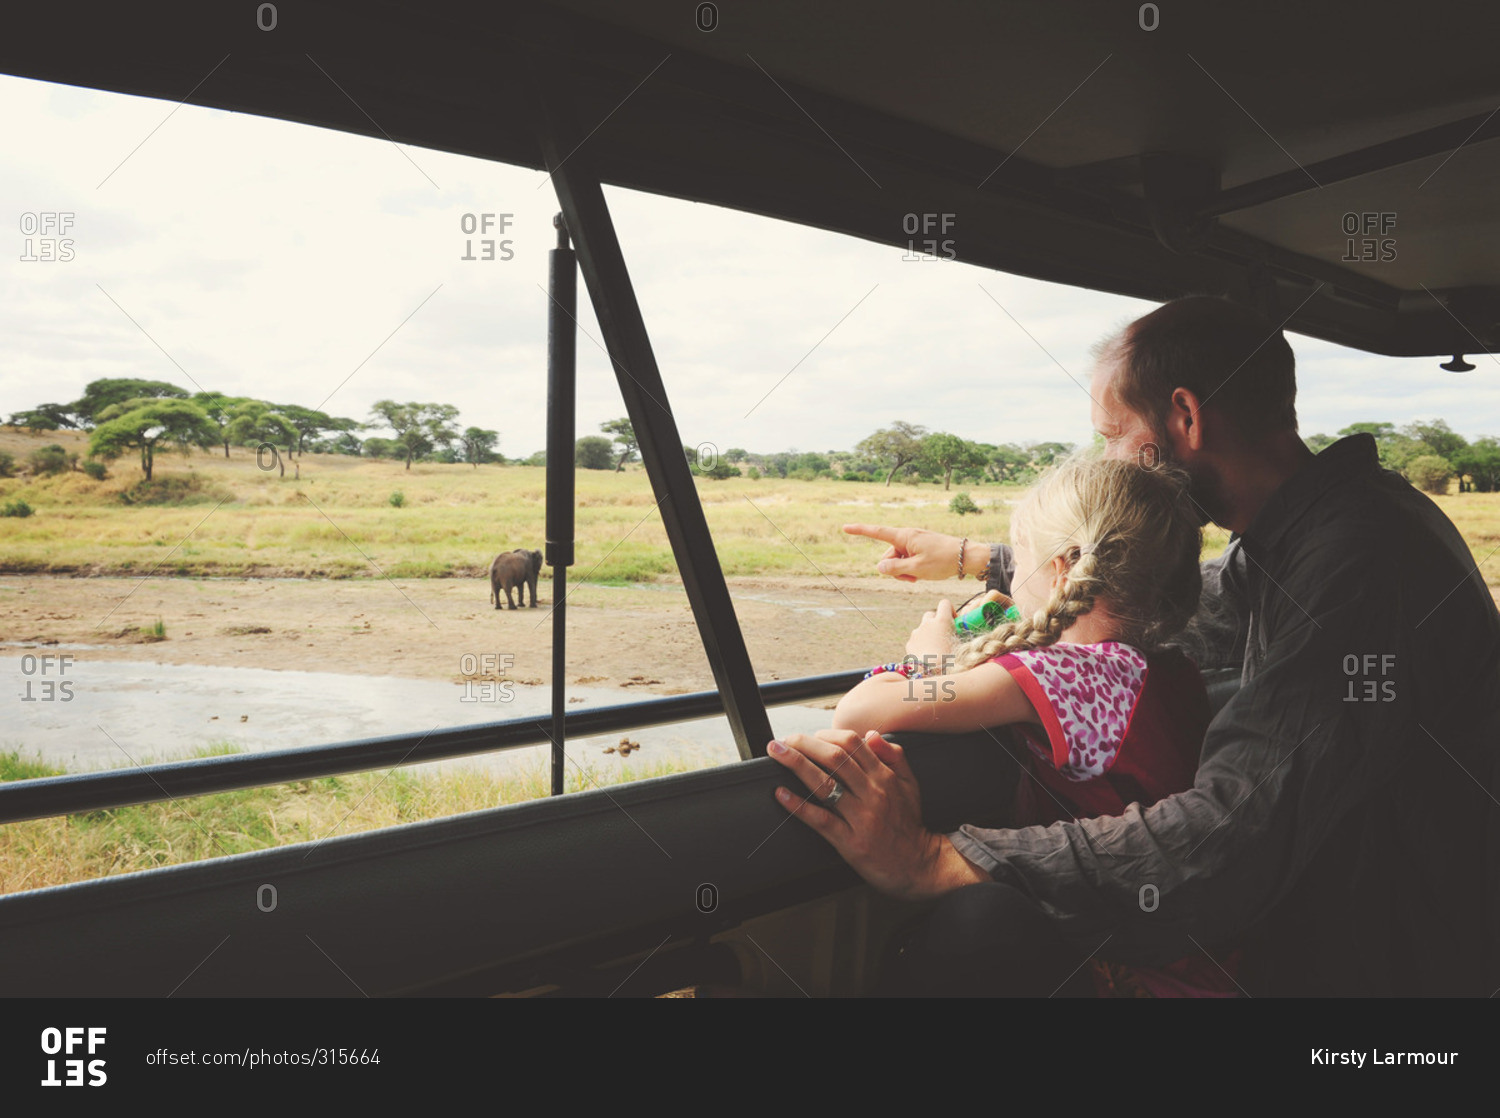 Man and girl on safari tour